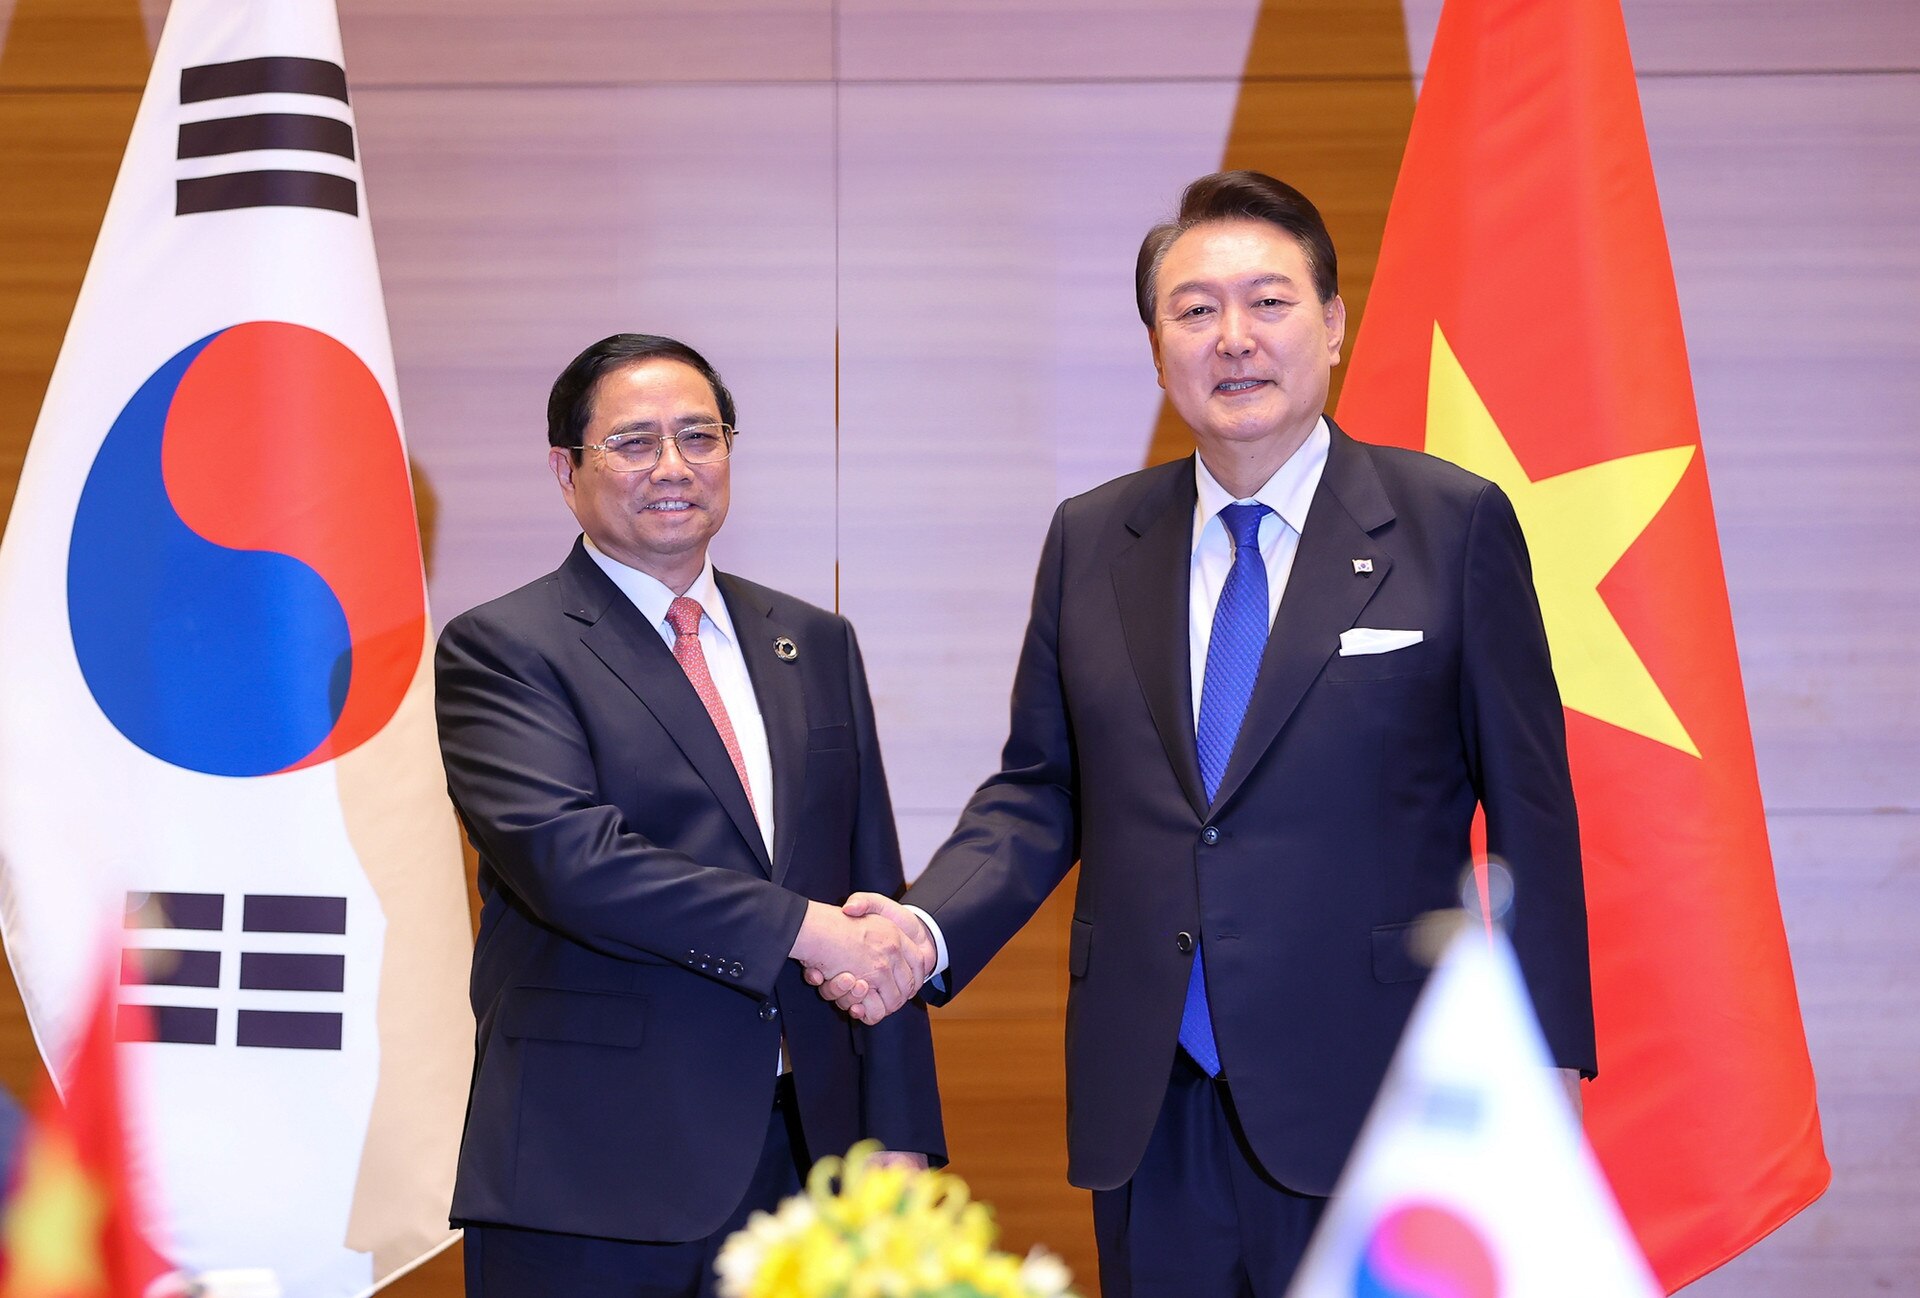 رئيس الوزراء فام مينه تشينه يلتقي برئيس جمهورية كوريا بمناسبة انعقاد القمة الموسعة لمجموعة السبع - الصورة 7.